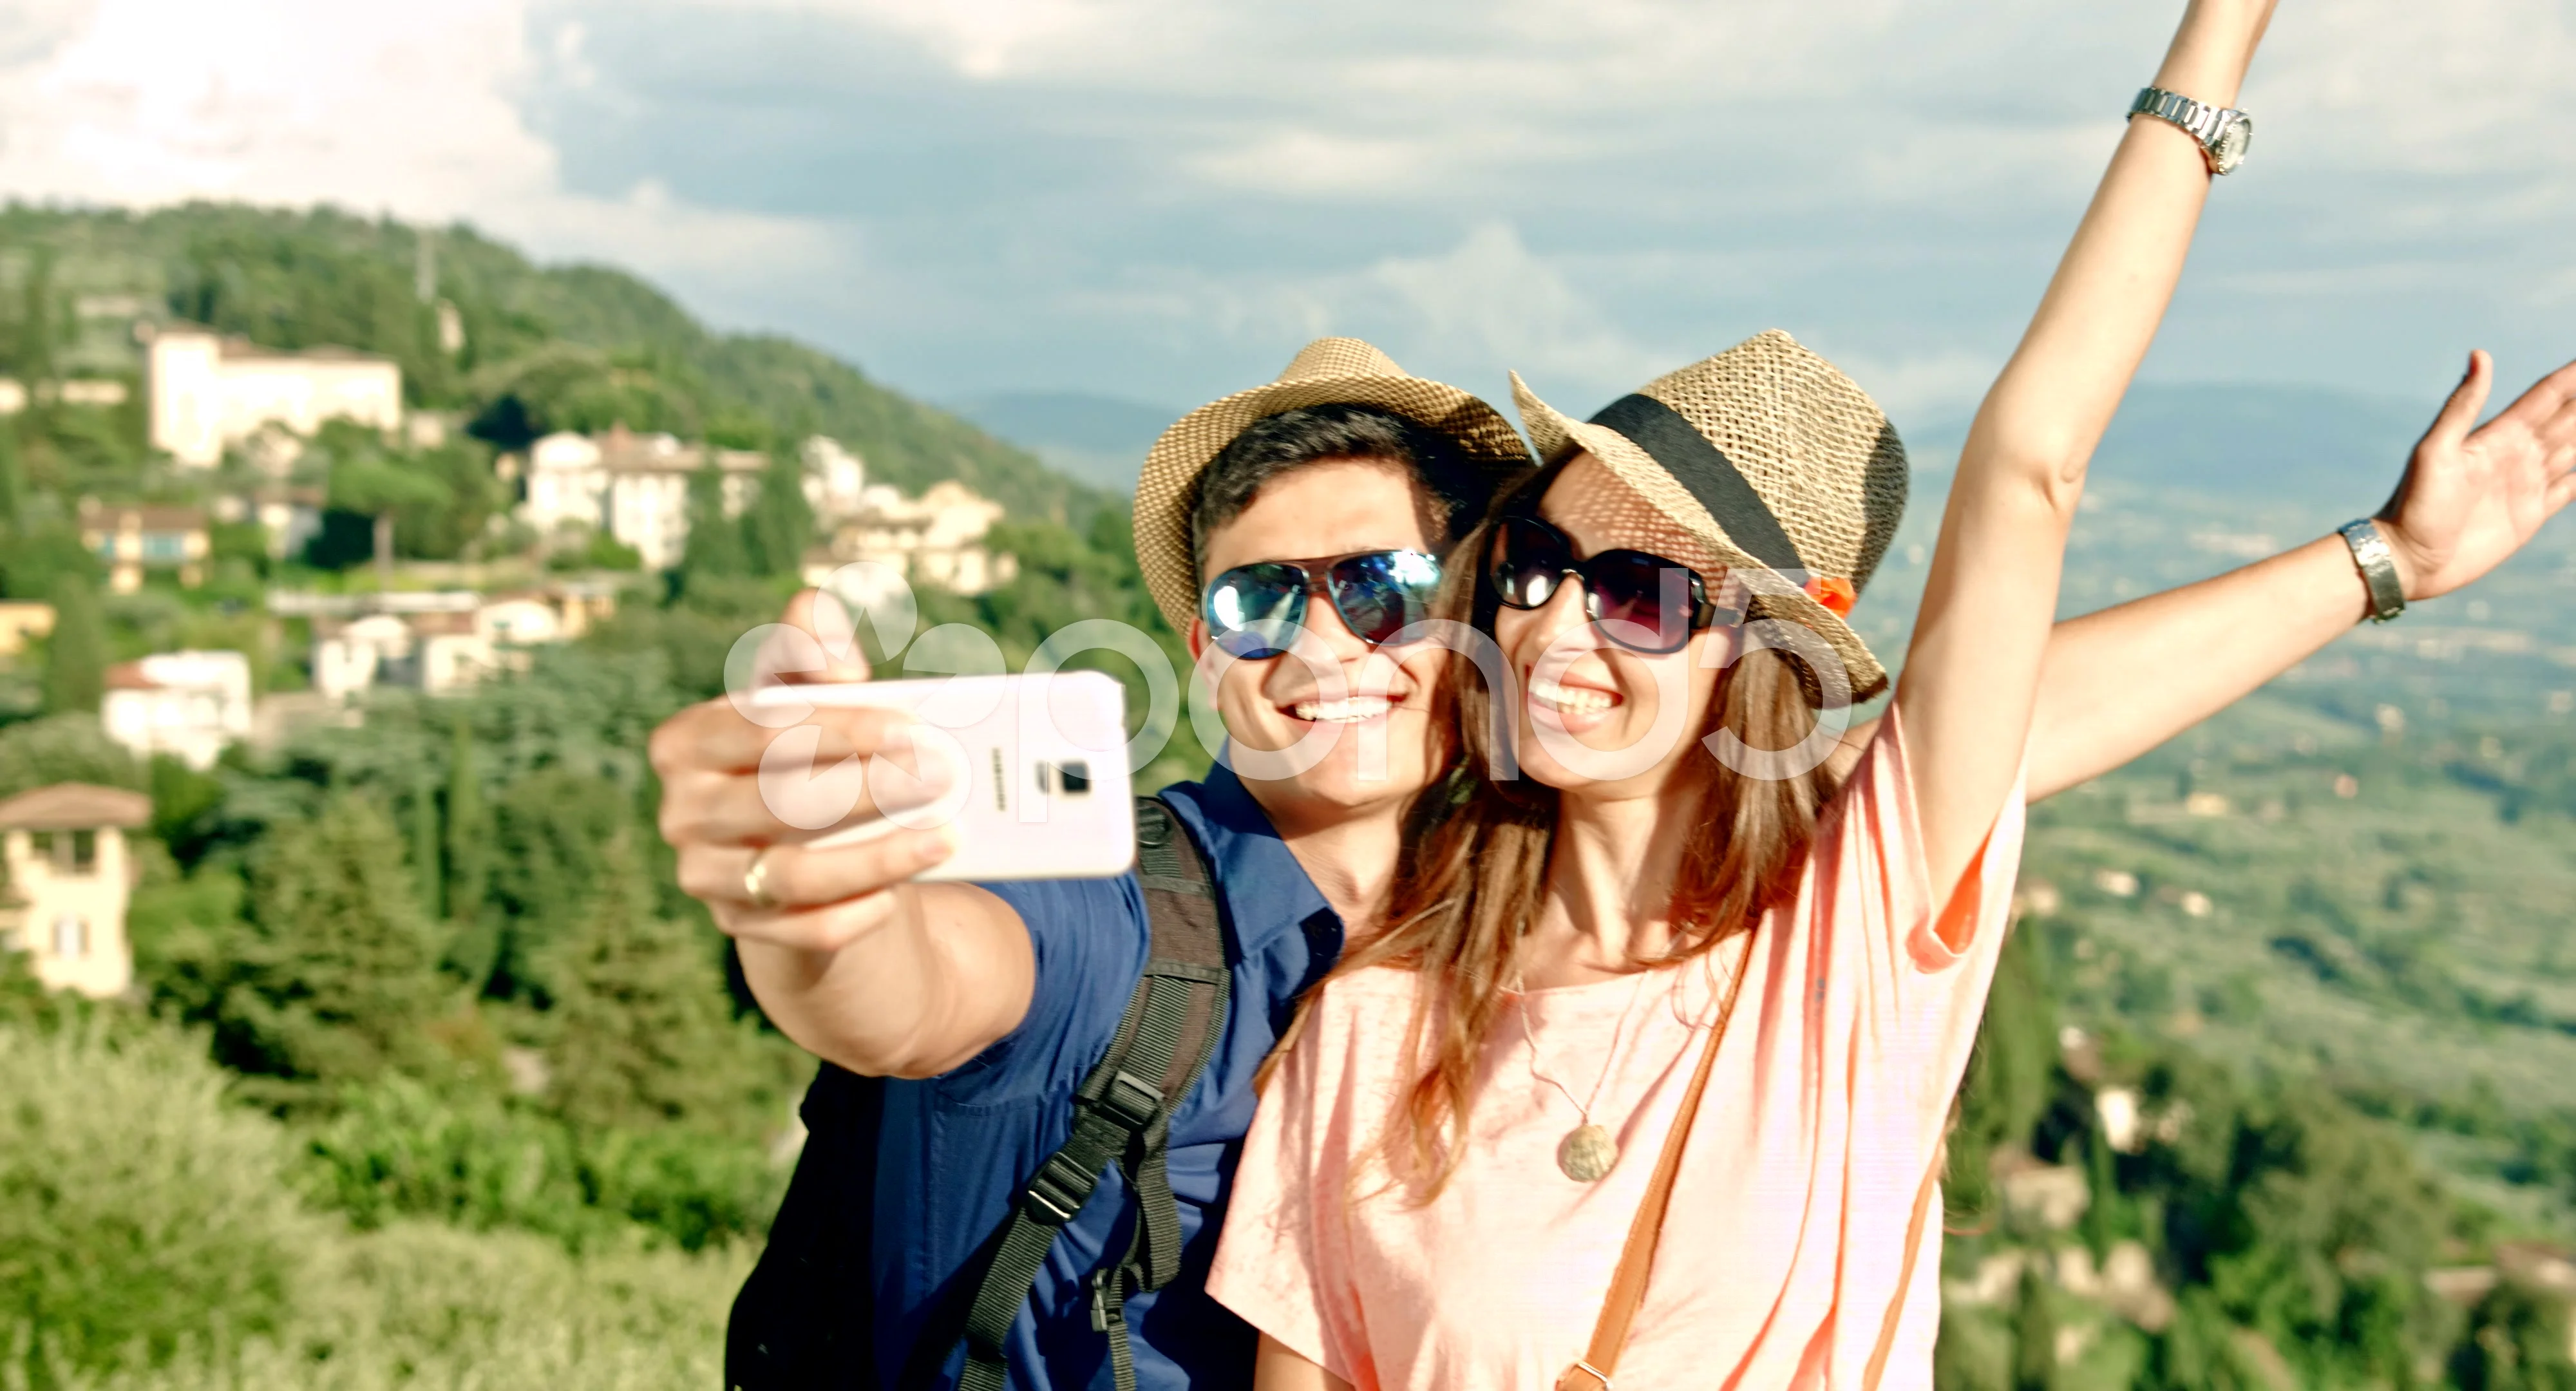 Selfie Couple Photo Ideas on His Lap - Lemon8 Search